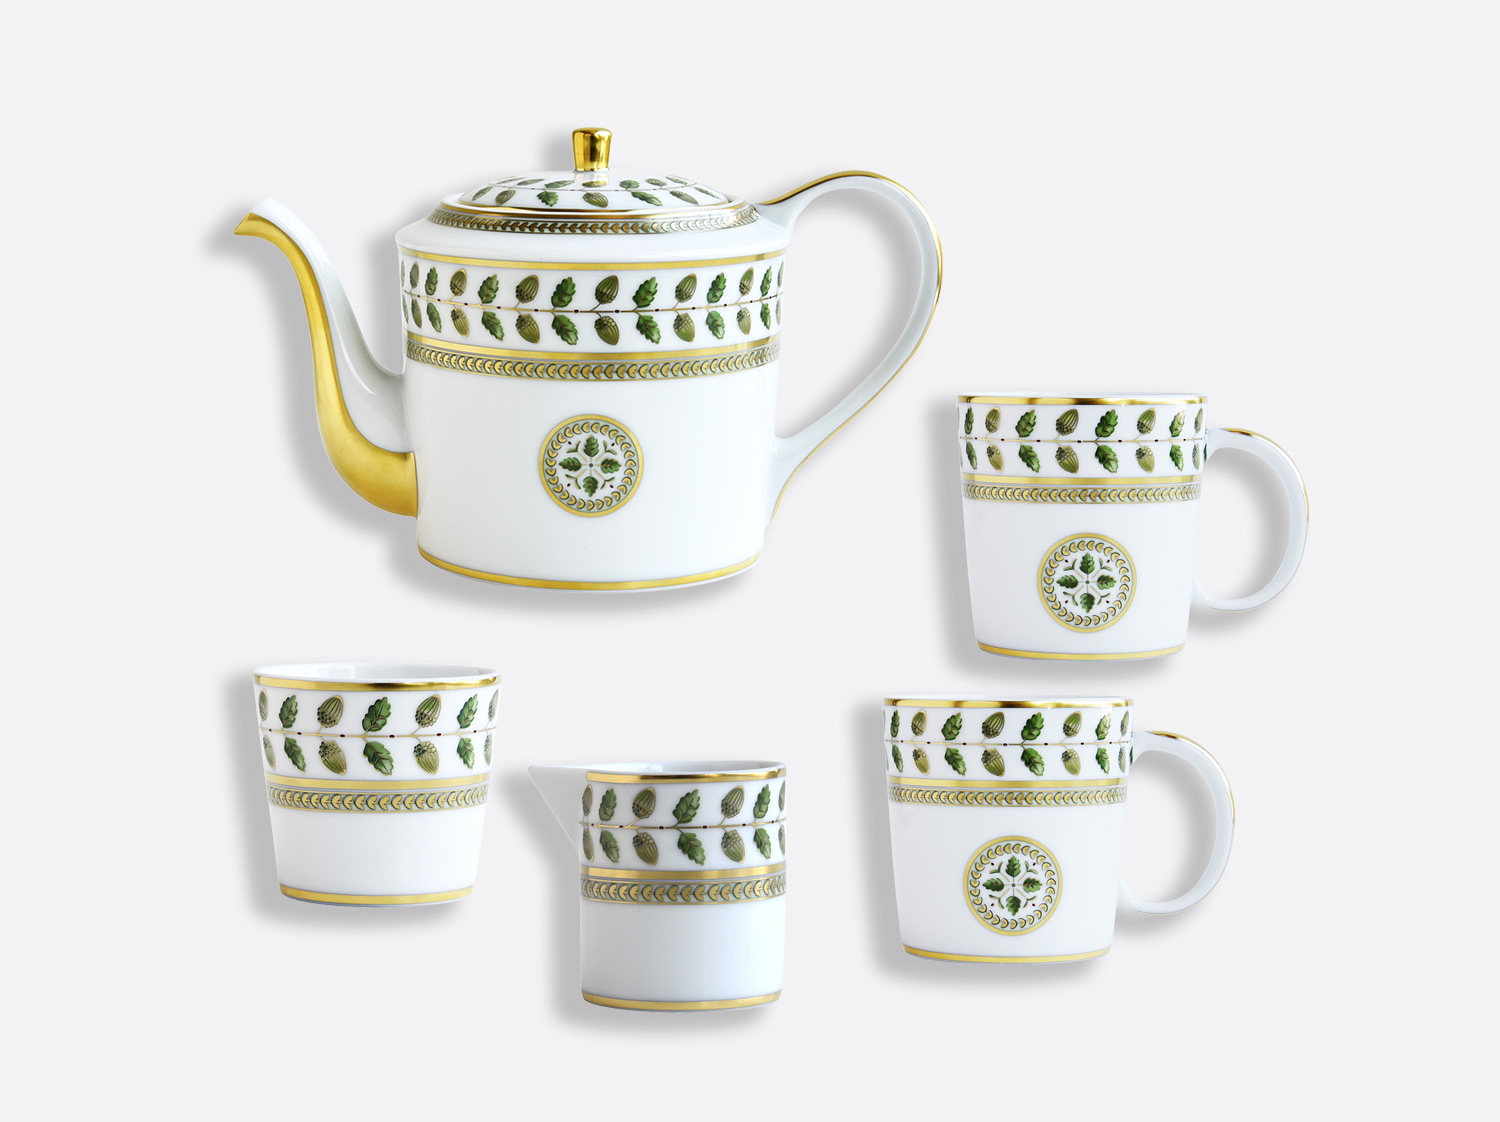 Coffret 1 théière, 2 mugs, 1 sucrier et 1 crémier en porcelaine de la collection Constance Bernardaud